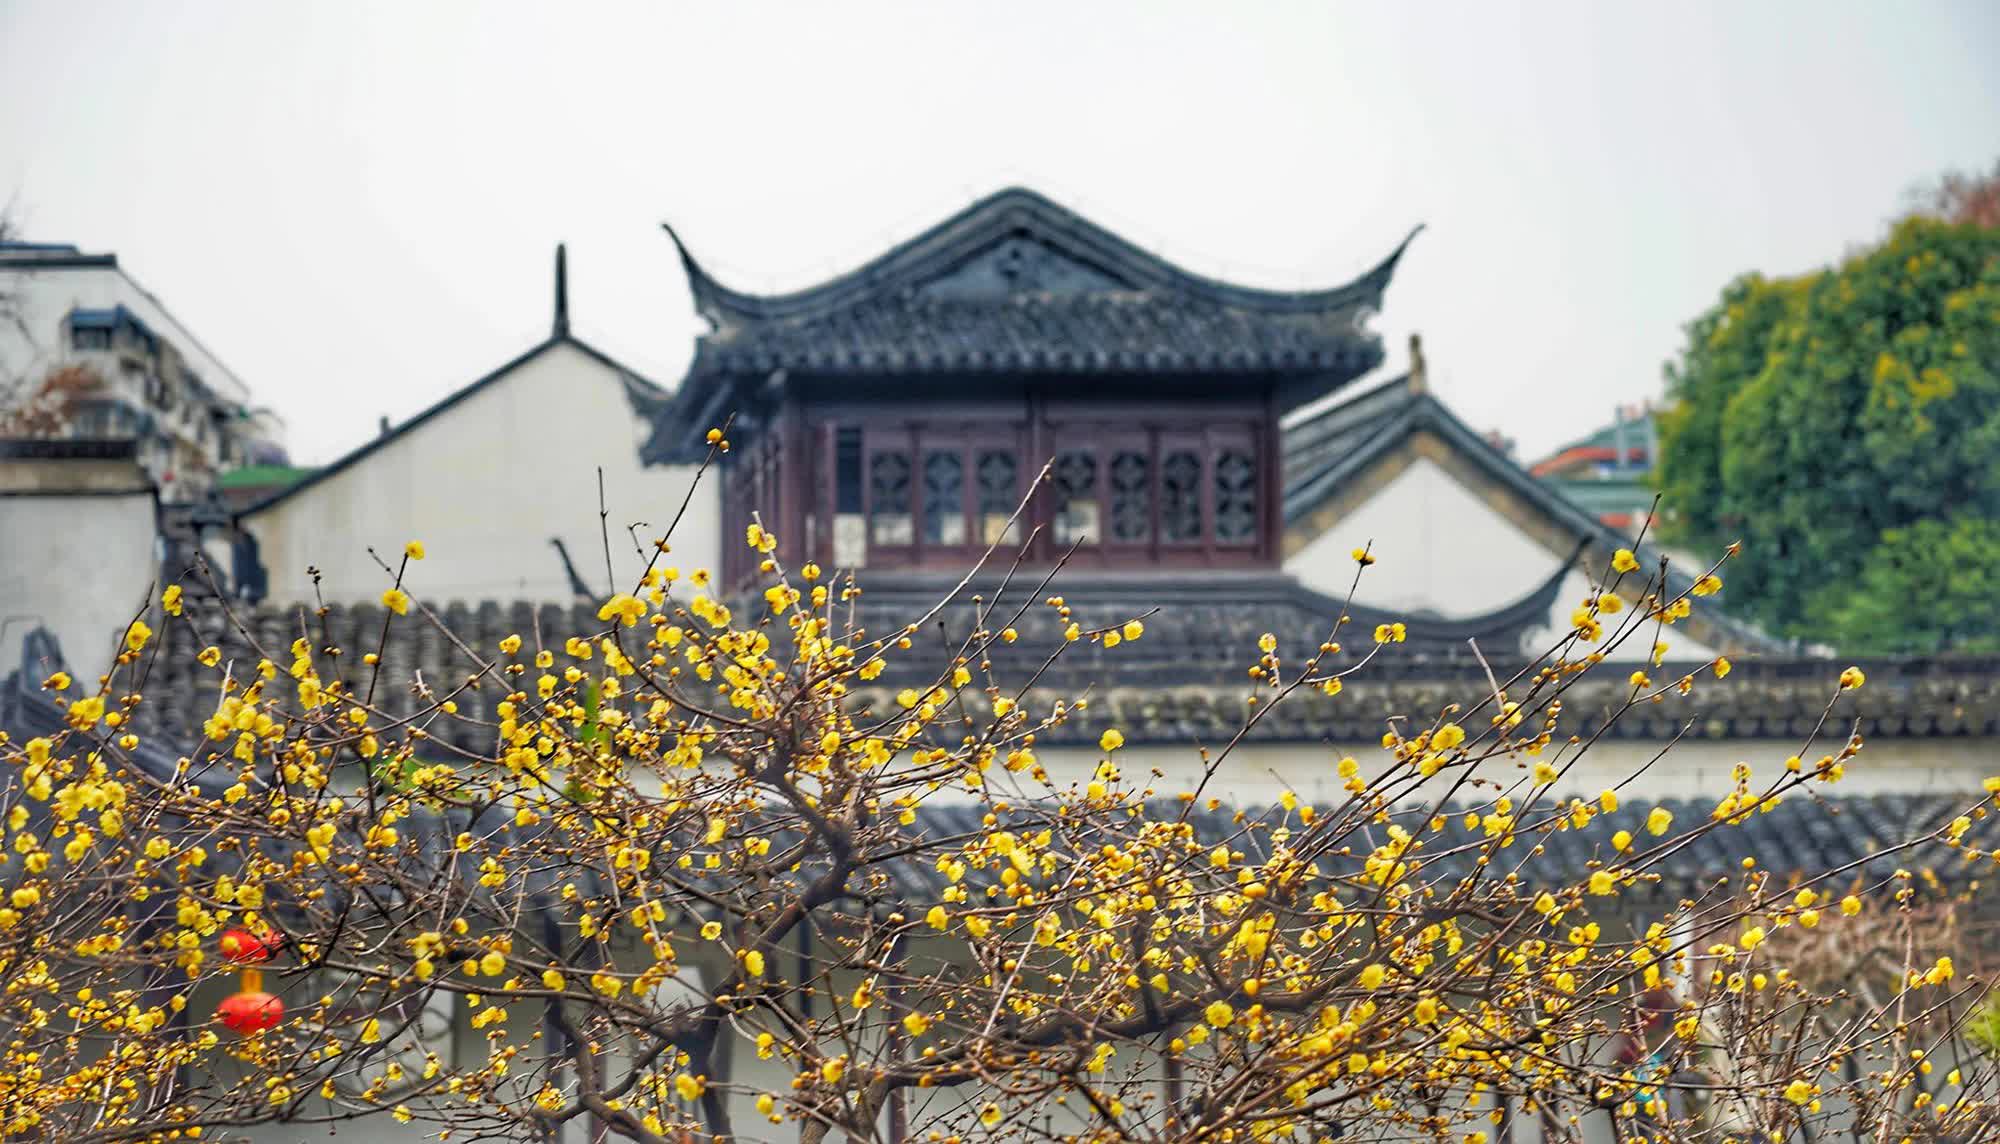 Khu vườn cổ 600 năm trường tồn cùng tuế nguyệt, cảnh sắc 4 mùa đẹp vĩnh cửu giữa cố đô Nam Kinh - Ảnh 9.